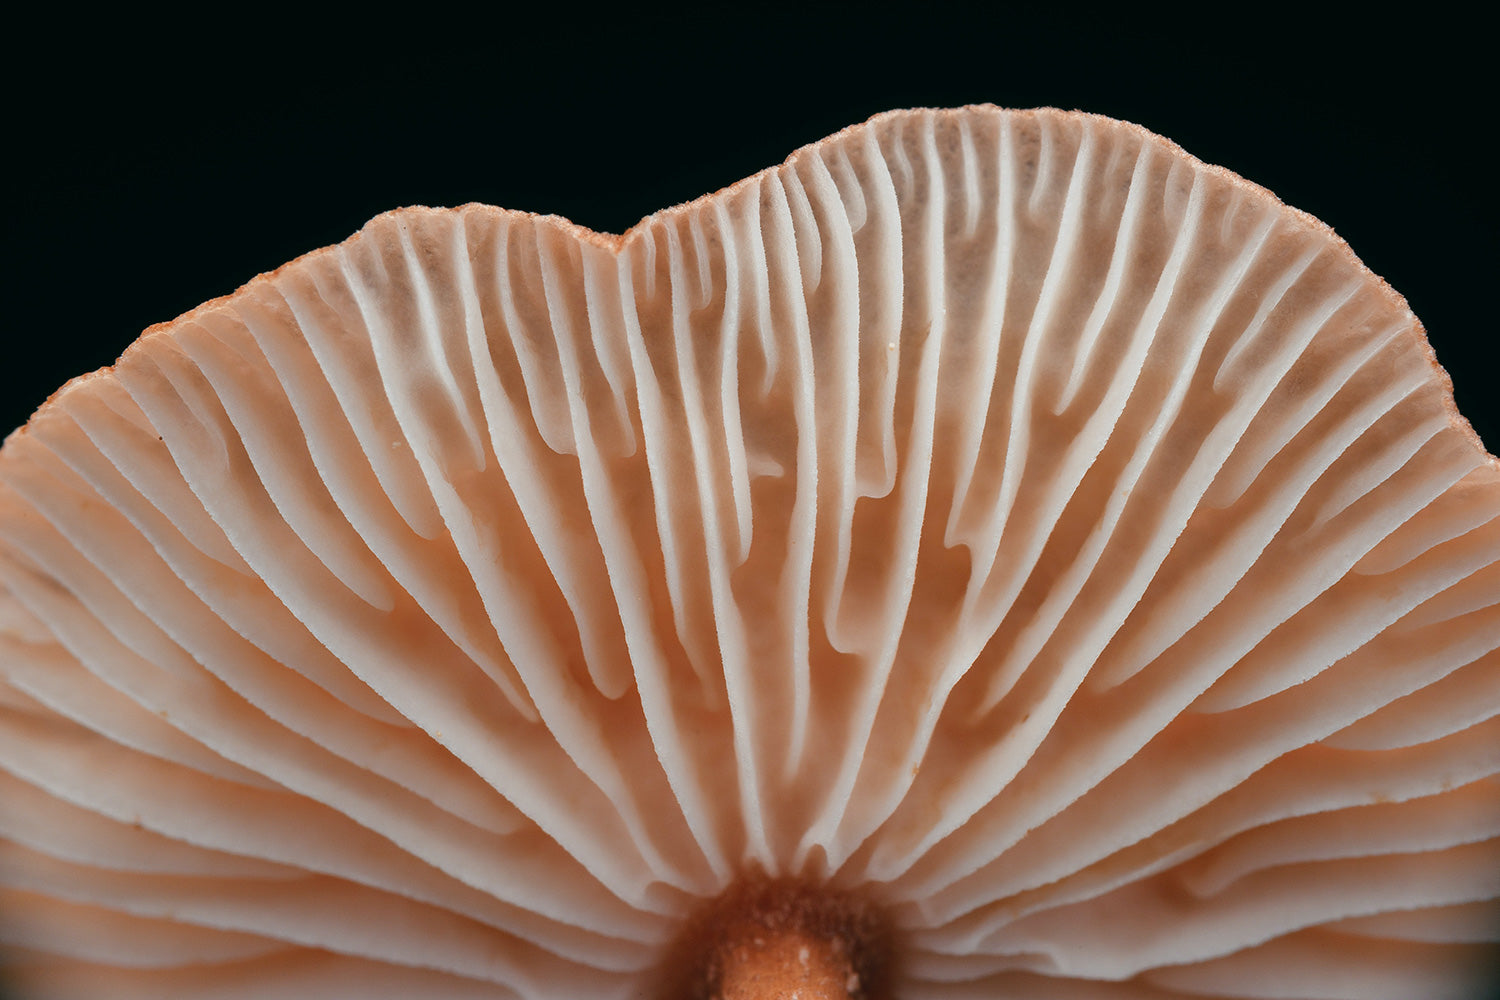 The underside/gills of a mushroom cap